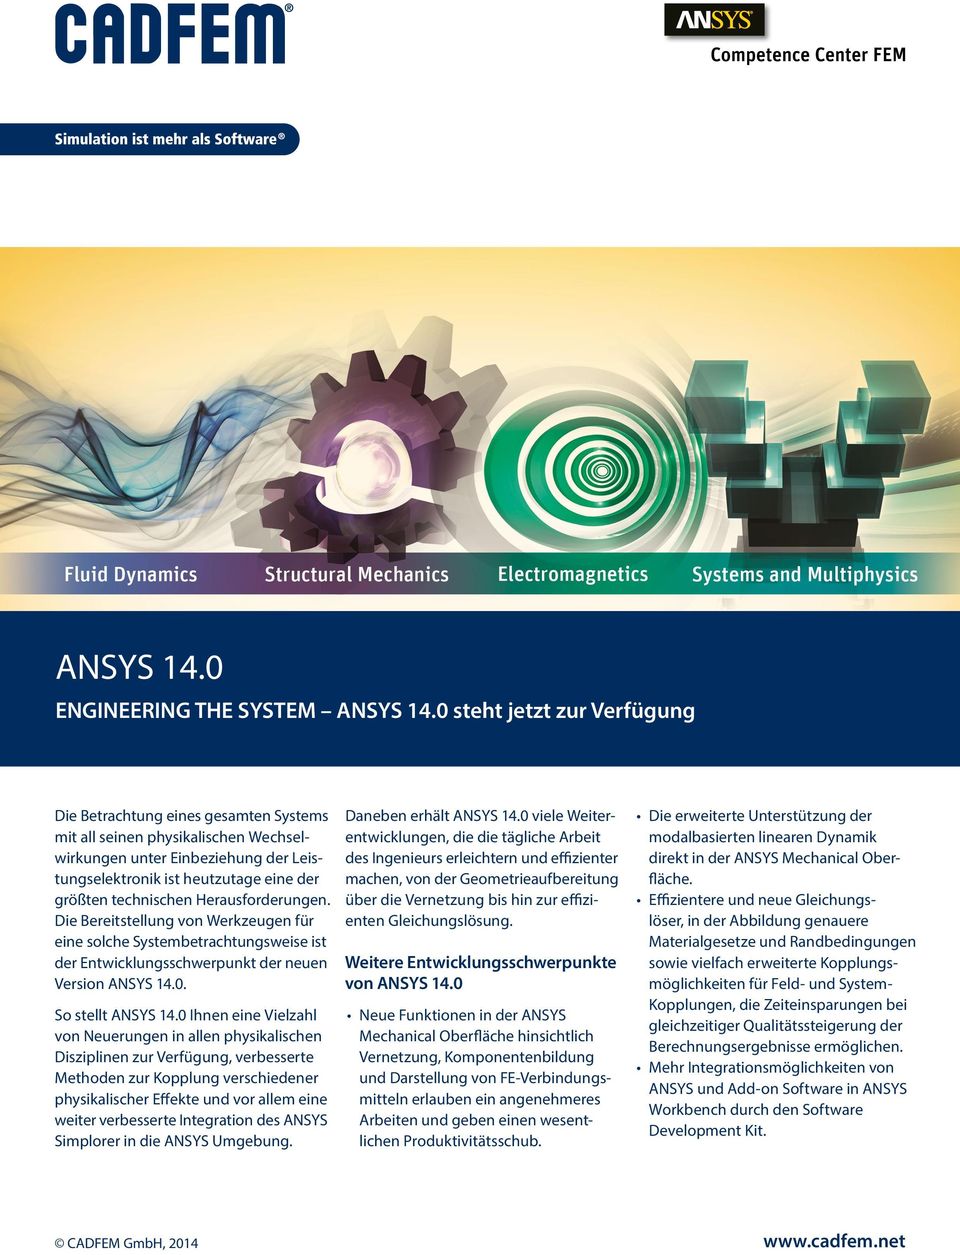 technischen Herausforderungen. Die Bereitstellung von Werkzeugen für eine solche Systembetrachtungsweise ist der Entwicklungsschwerpunkt der neuen Version ANSYS 14.0. So stellt ANSYS 14.